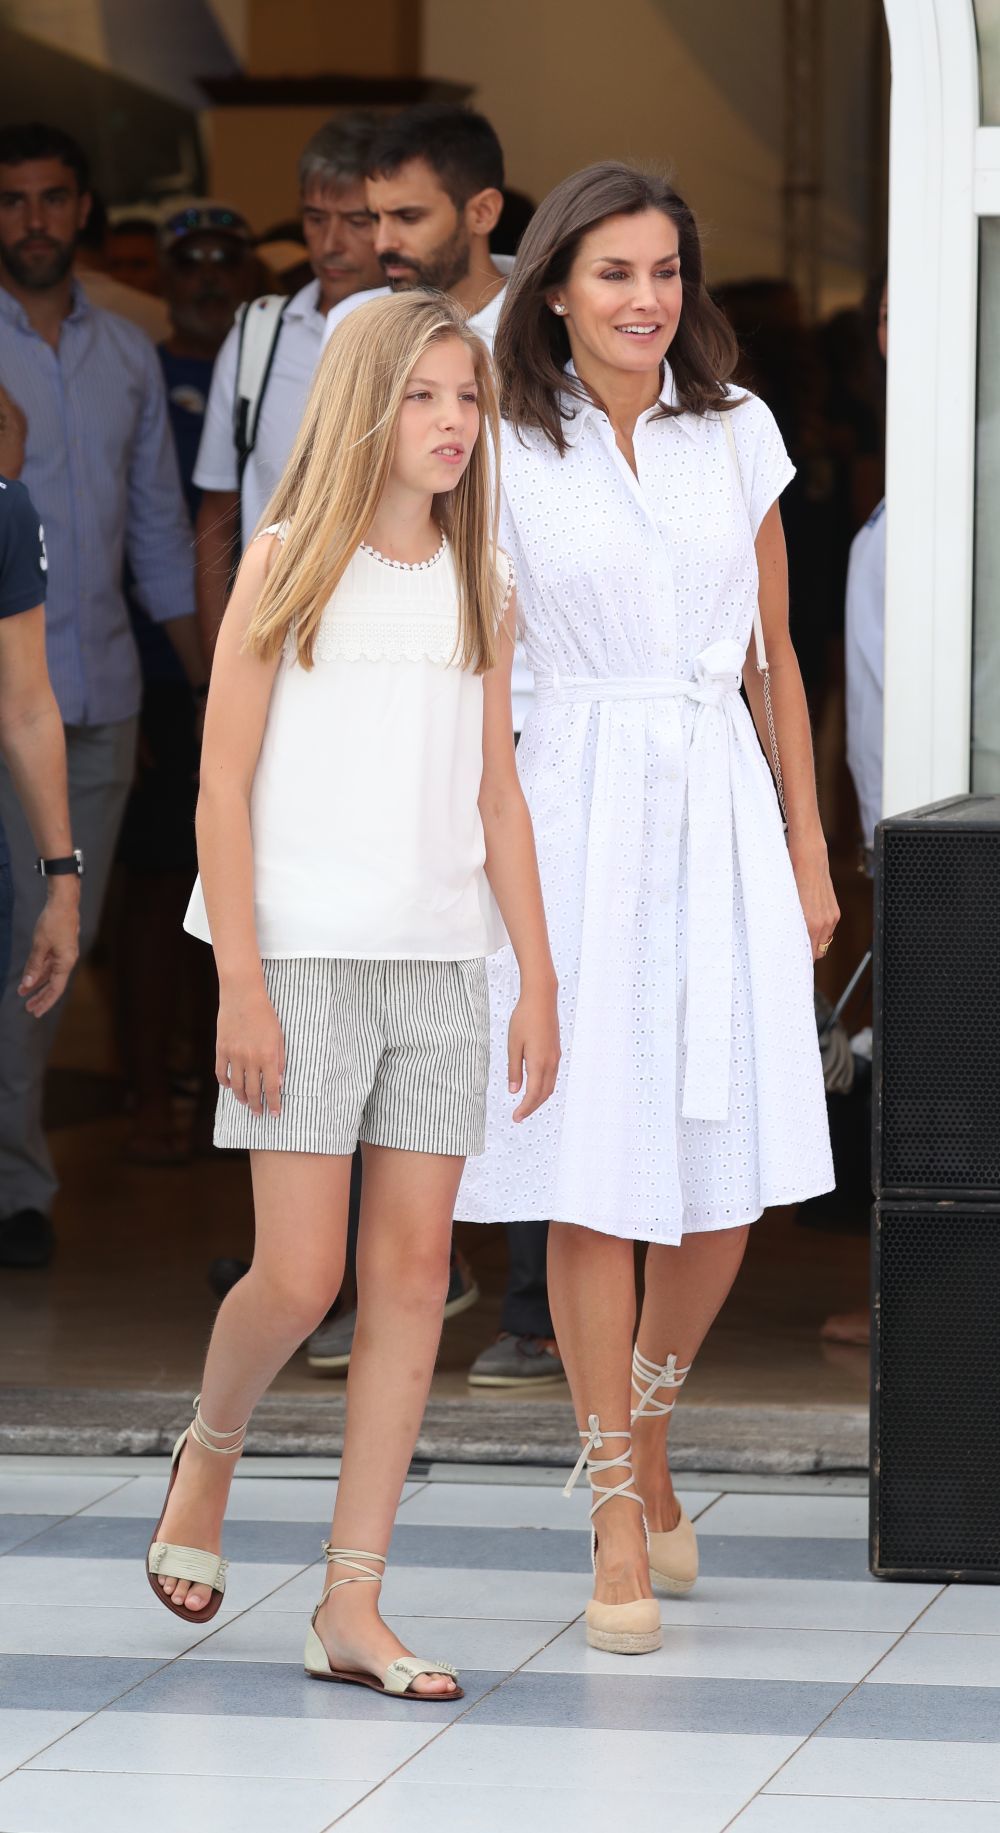 La reina Letizia junto a la infanta Sofía, ambas con looks muy veraniegos.